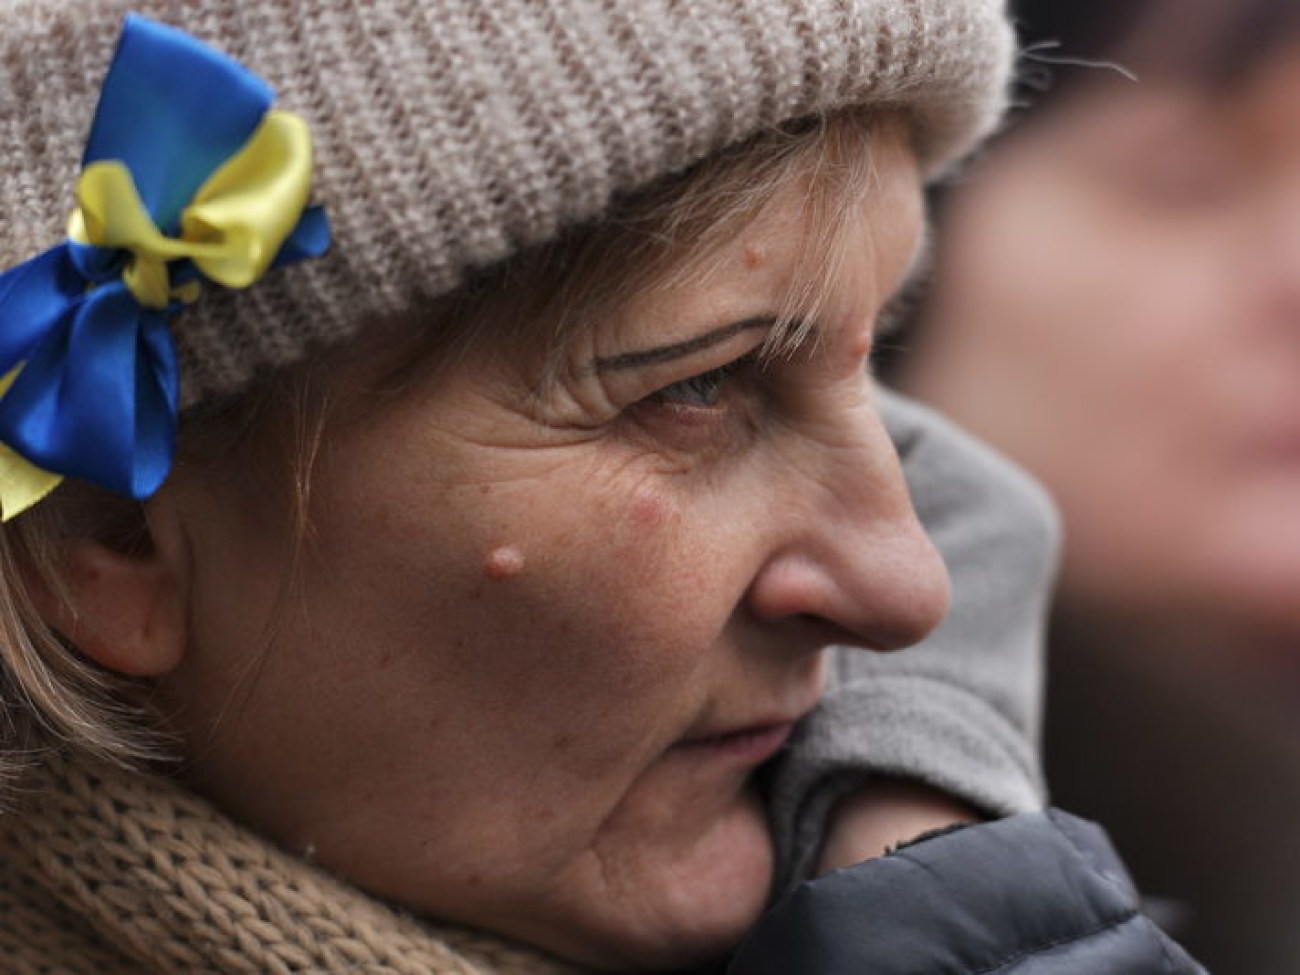 Активисты освободили Грушевского &#8230; Майдан остается, 16 февраля 2014г.